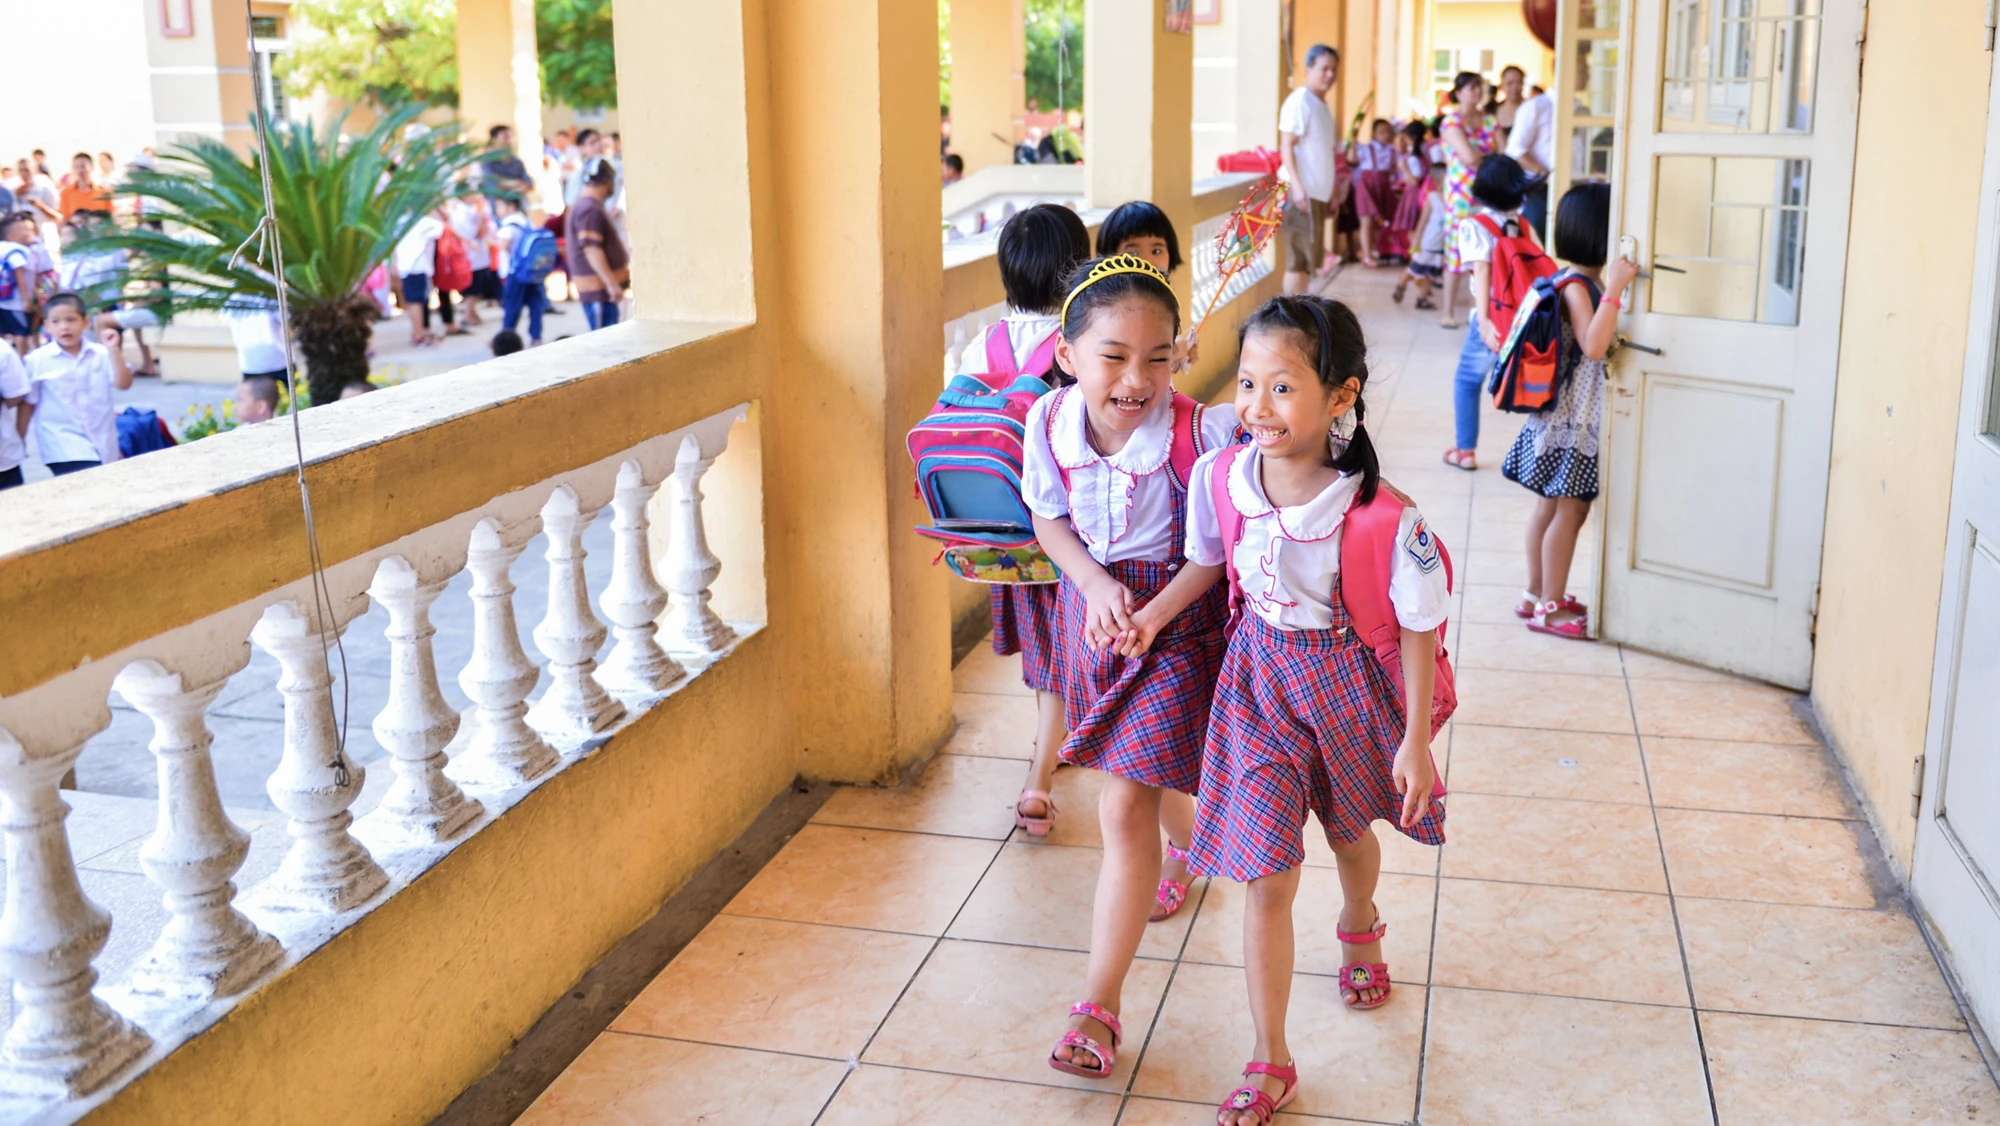 Une école primaire à Hanoï, au Viet Nam. (Photo : Quang Vu / Shutterstock)